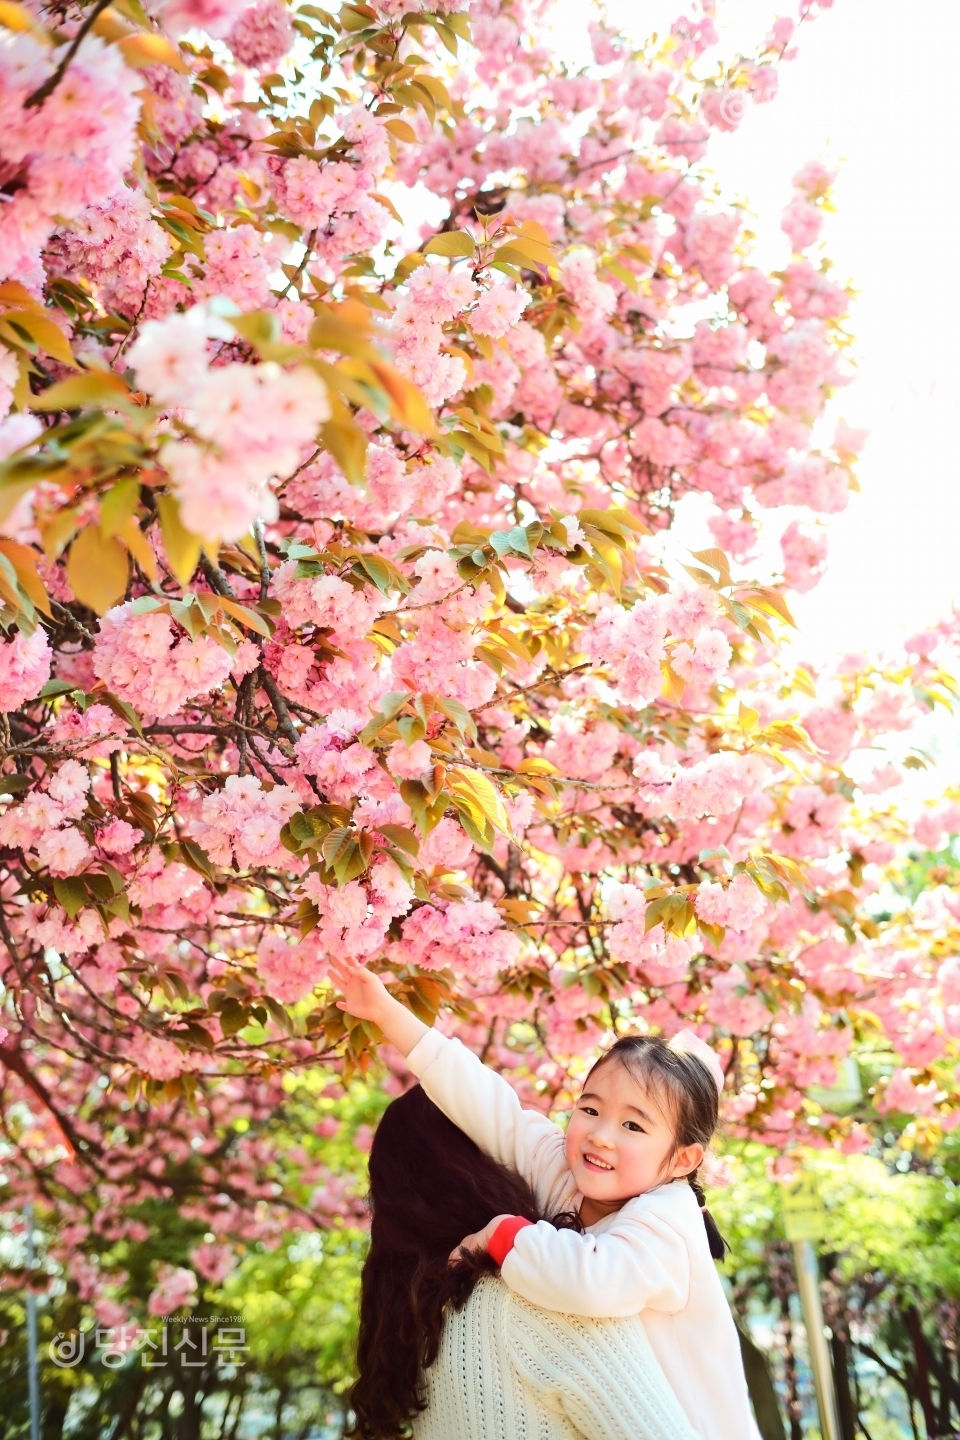 당진 남산공원에 왕겹벚꽃이 활짝 폈다. 촬영을 위해 잠깐 마스크를 벗으니, 아이의 얼굴도 활짝 핀 듯 미소가 피어난다.